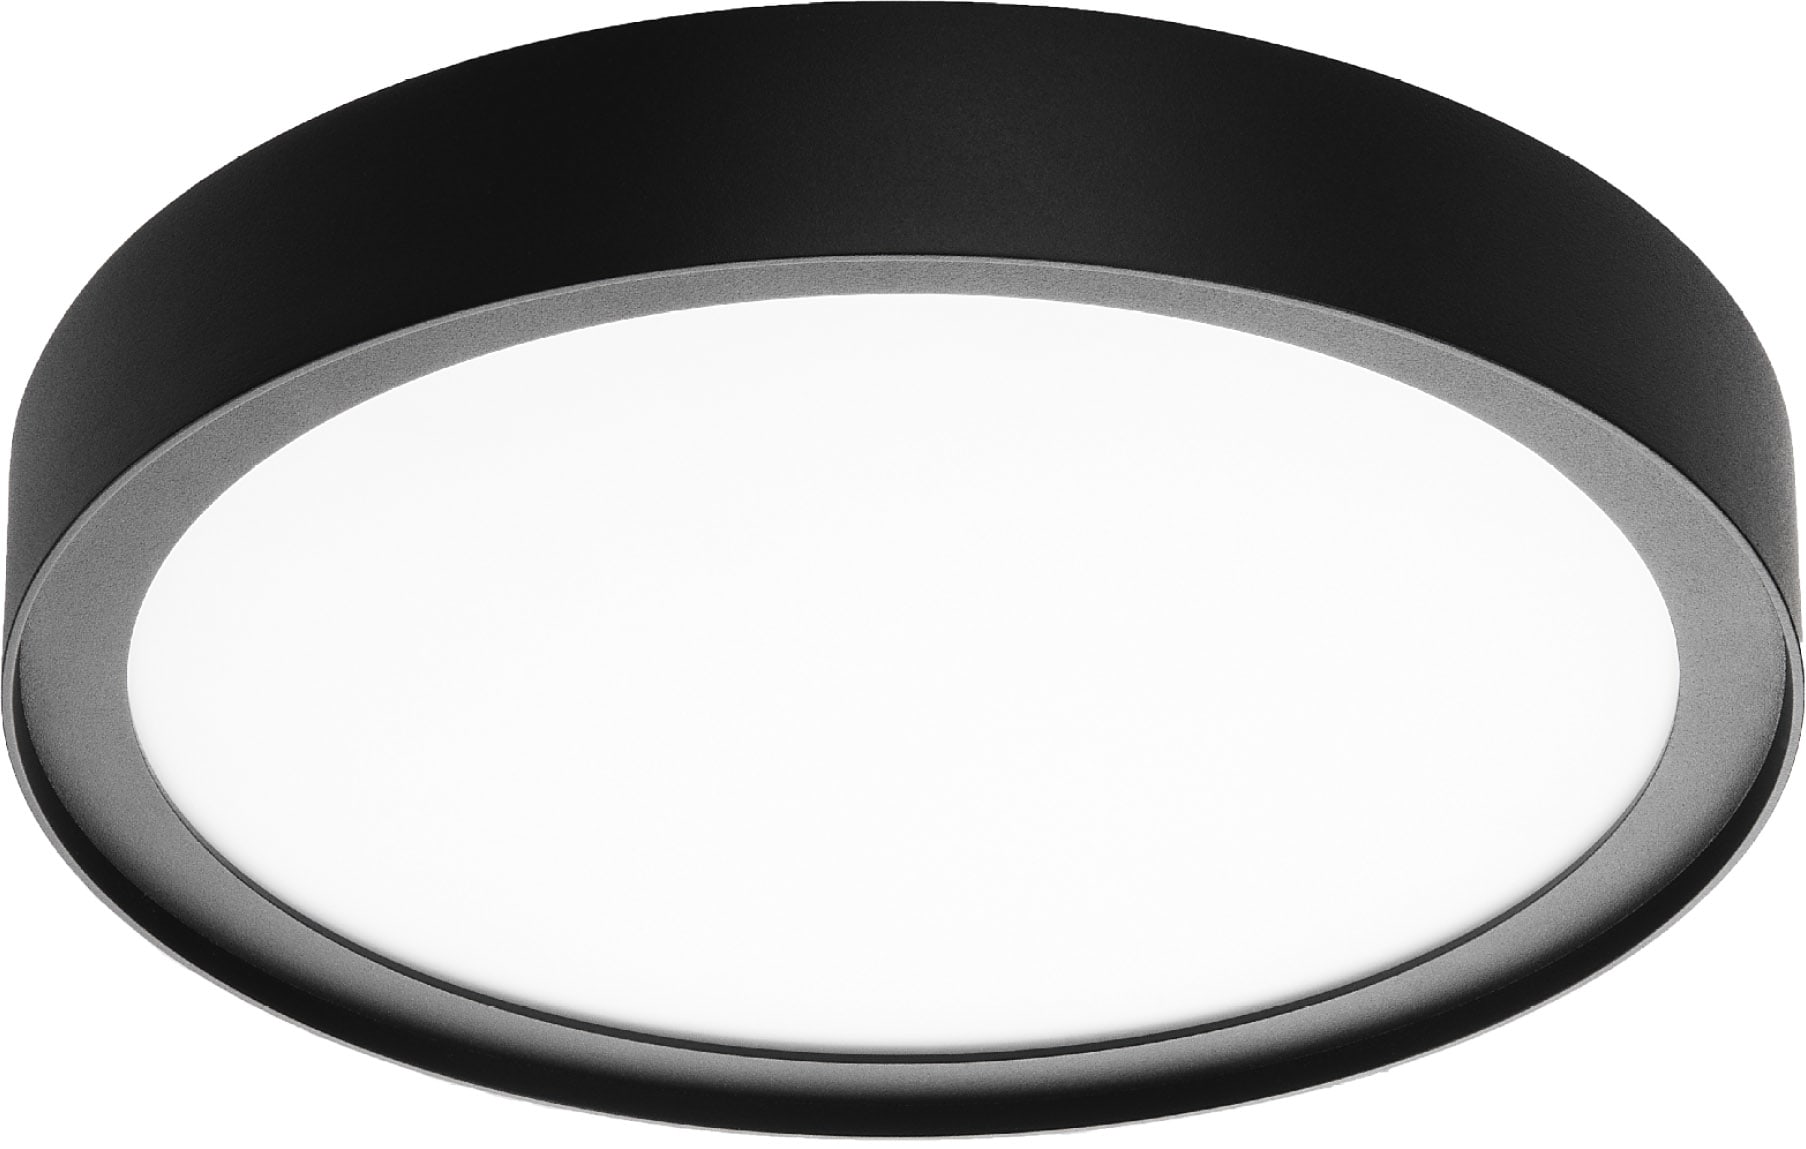 SG Lighting - Disc 290 luminaire en saillie noir 1850lm 3000K Ra>80 coupure de phase